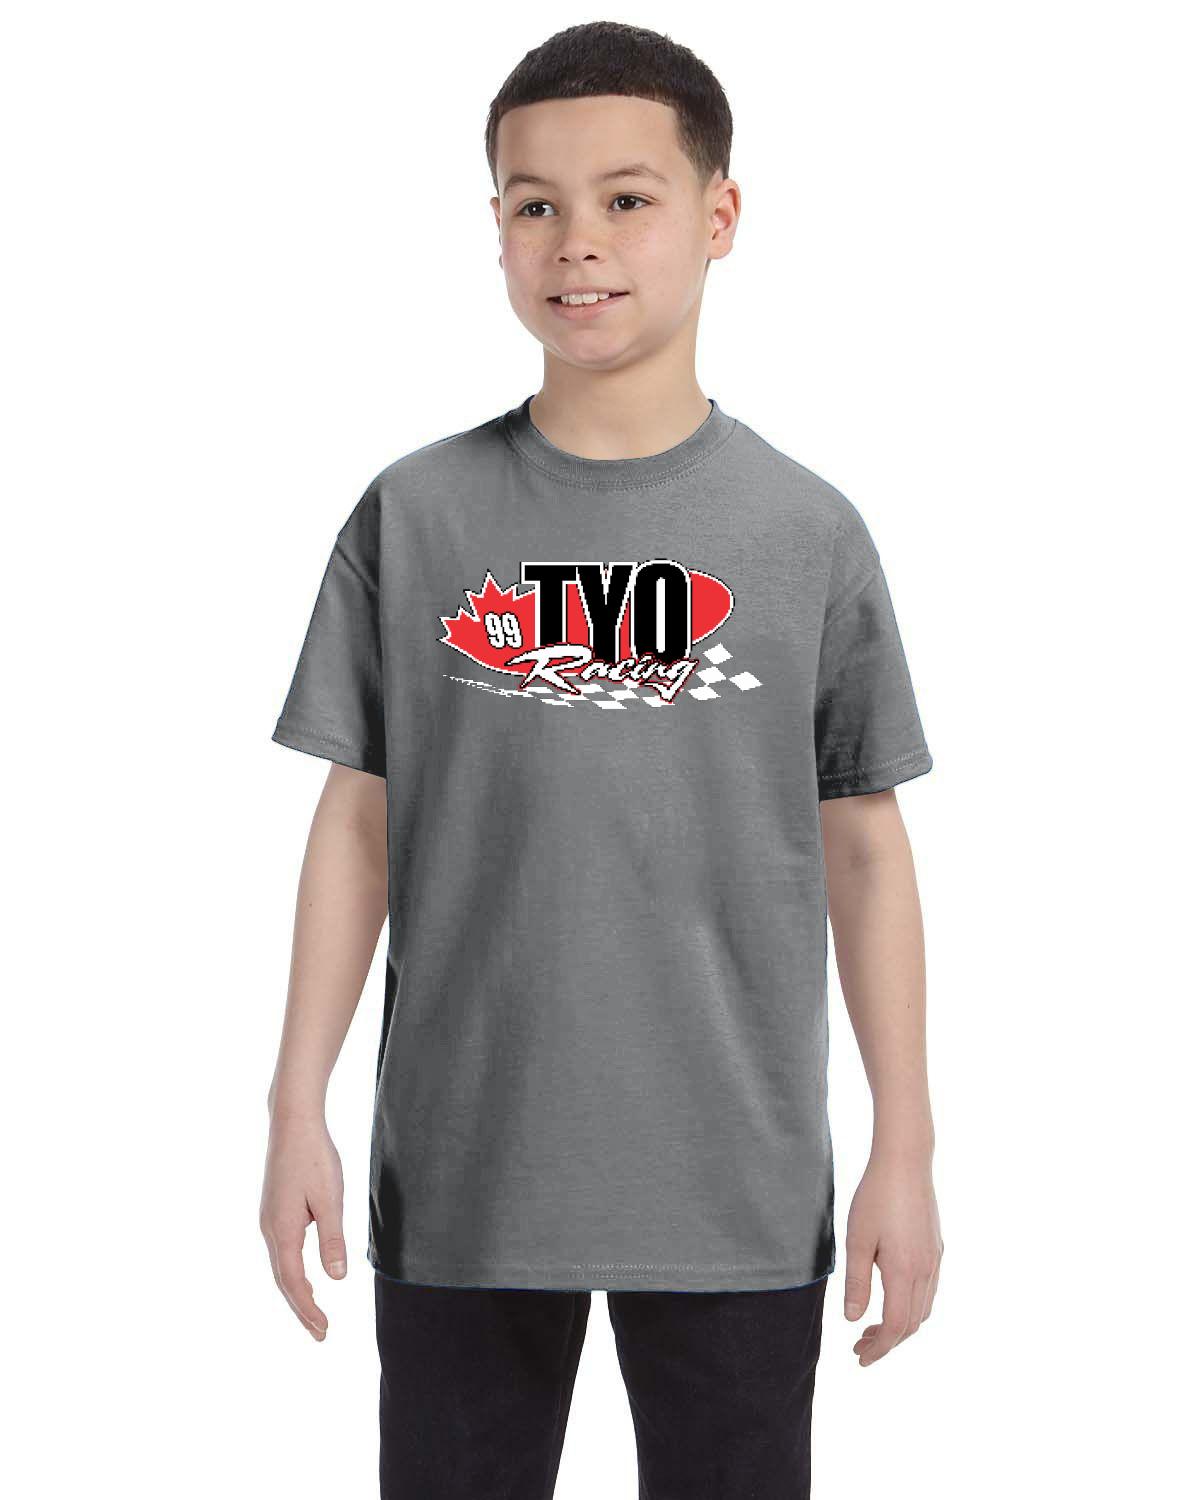 TYO Racing Kid's T-Shirt